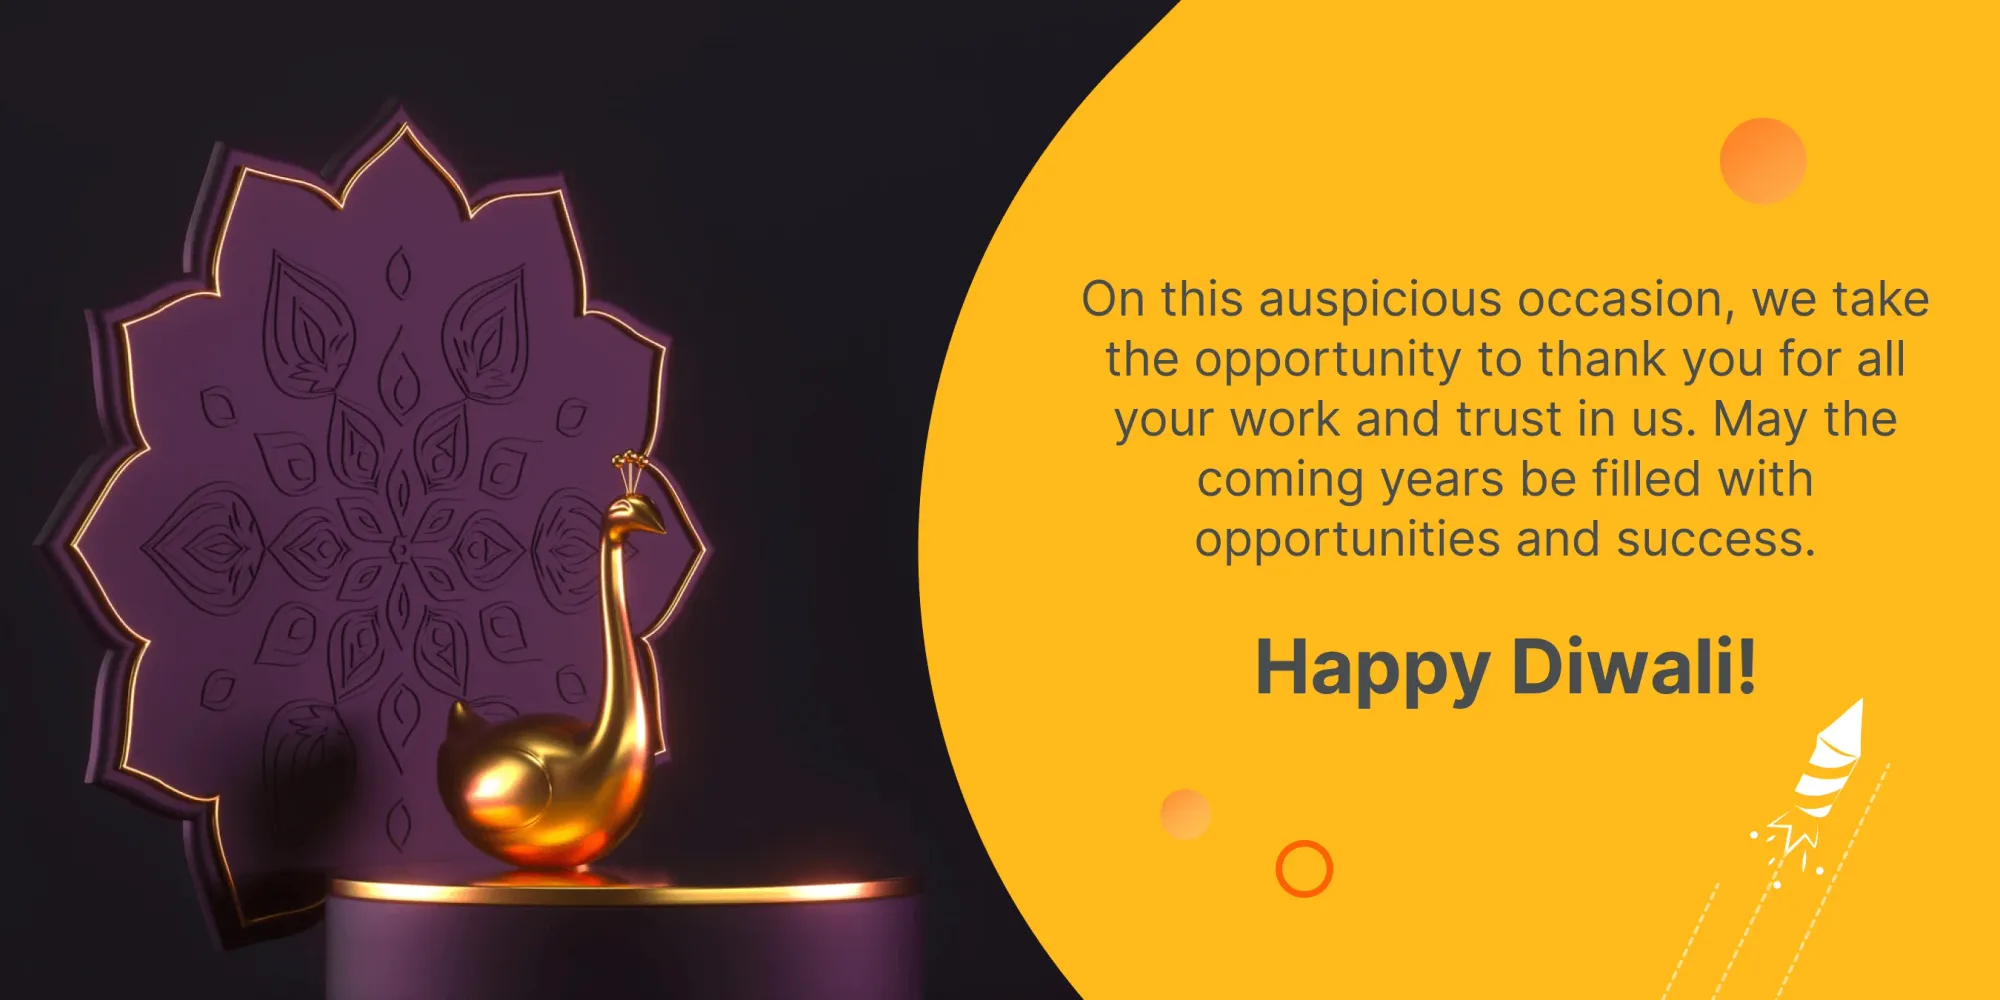 Einzigartige Diwali-Wünsche für Kunden